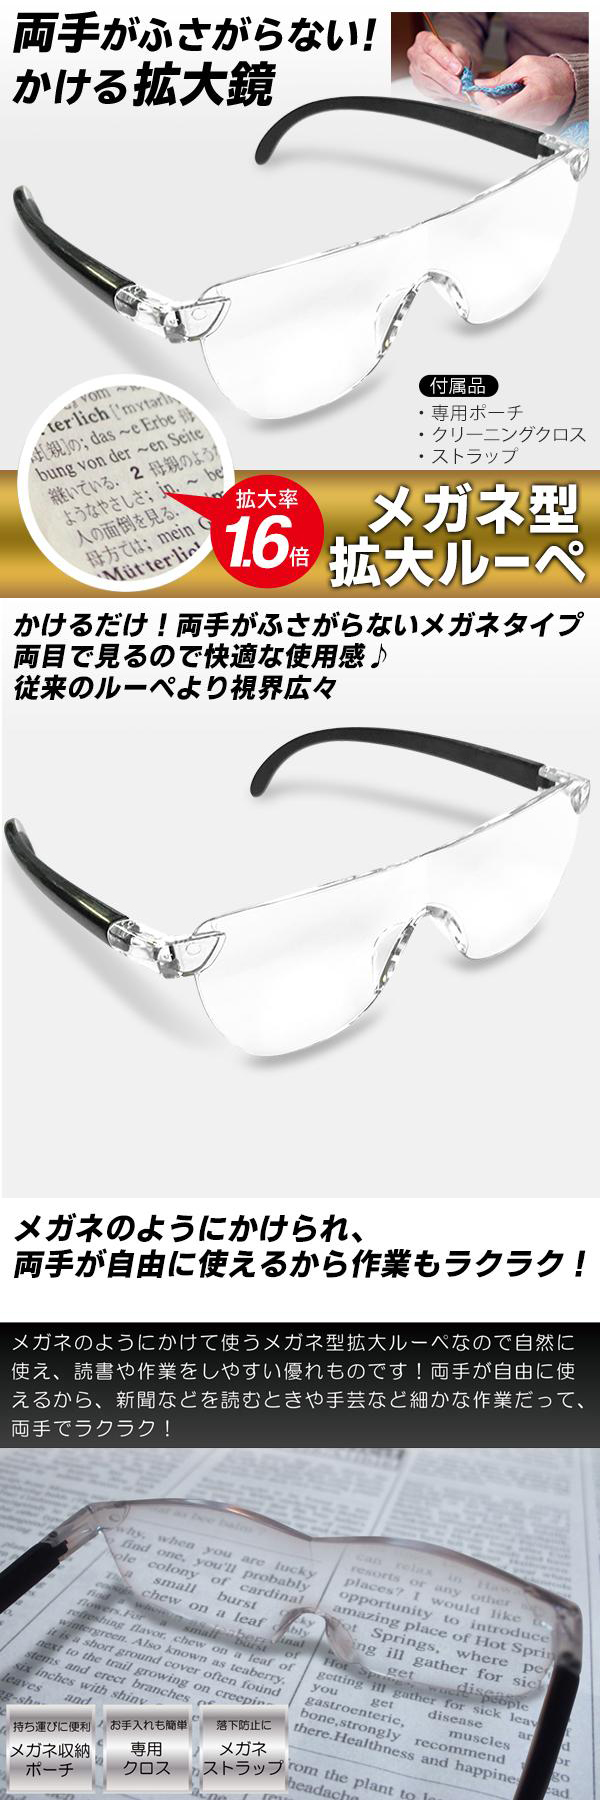 ◇送料無料(定形外)◇ ルーペ メガネ 拡大鏡 眼鏡型 1.6倍 メガネ型